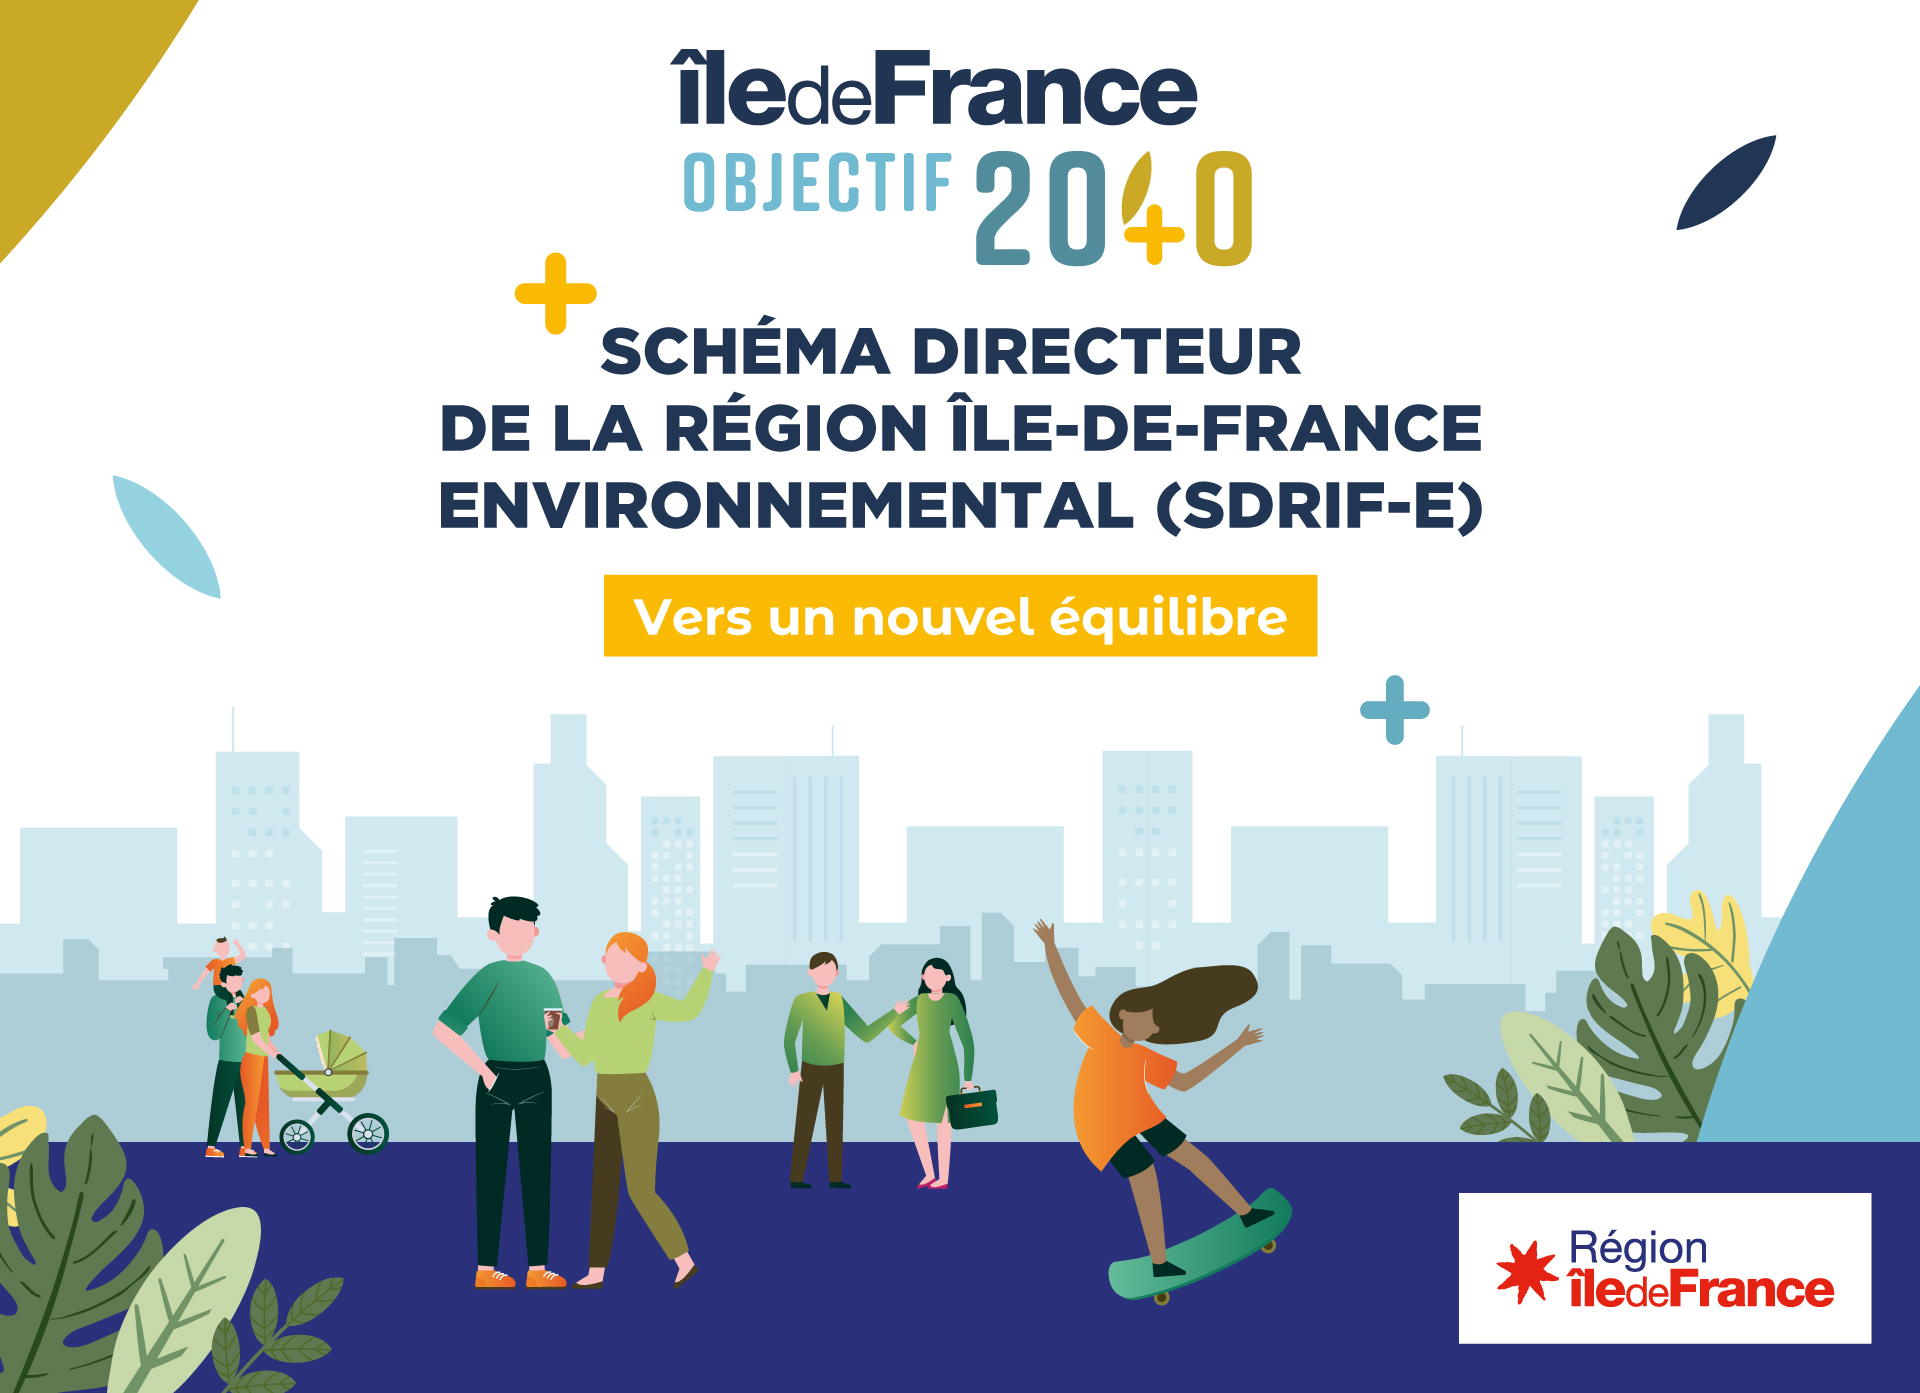 SDRIF-Environnemental : Île-de-France 2040, vers un nouvel équilibre